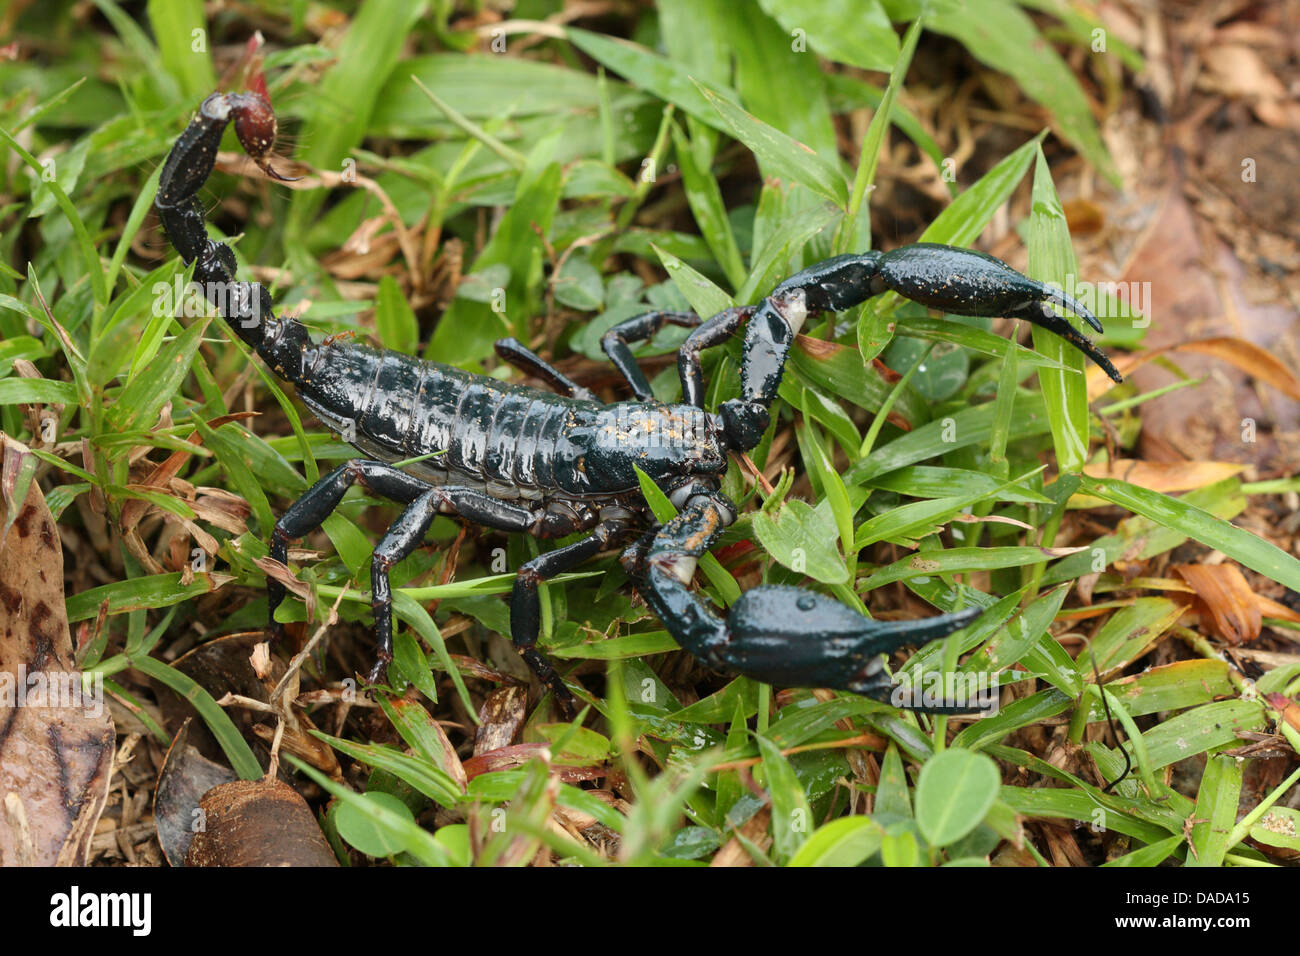 tropical scorpion lurking, Malaysia, Sarawak, Bako National Park Stock Photo